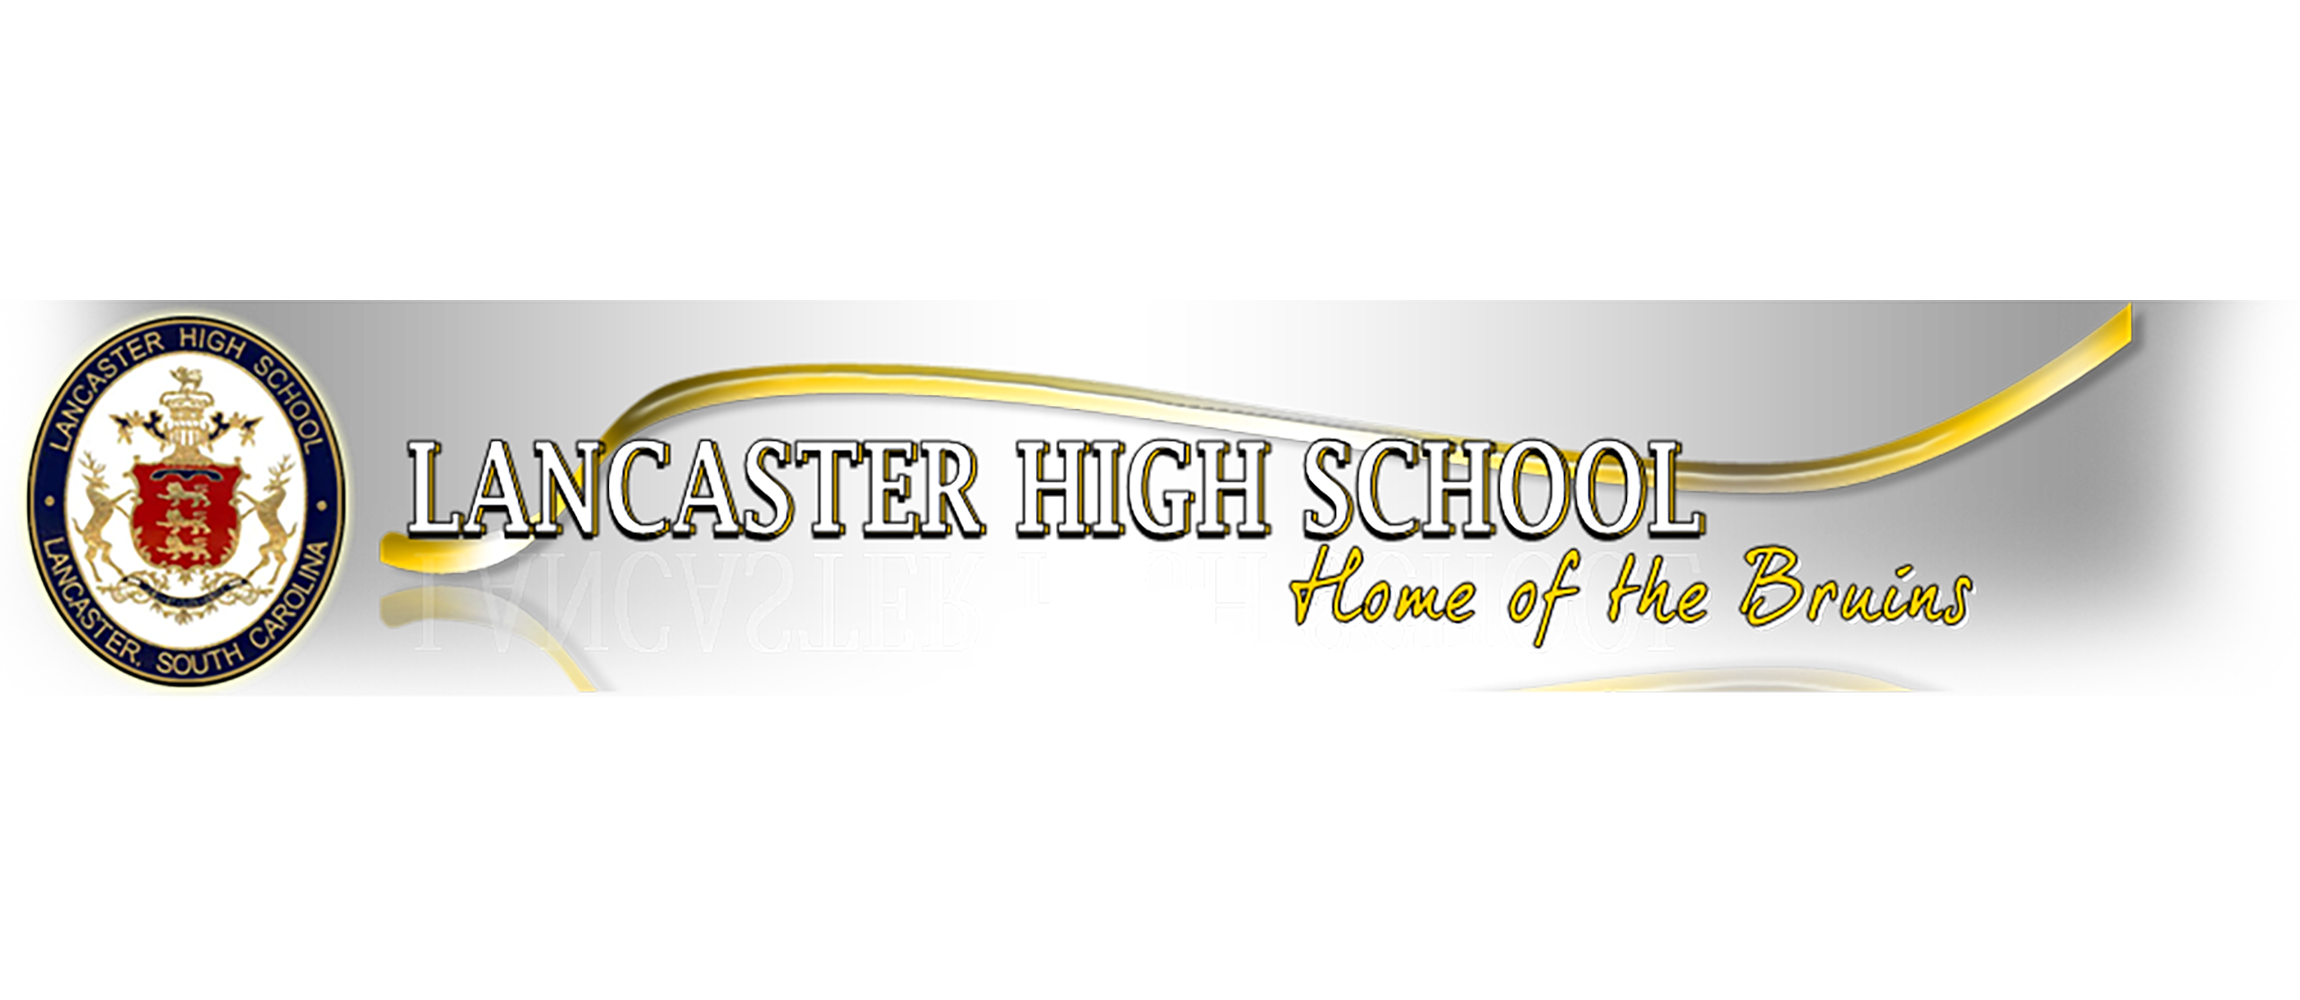 Lancaster High School - Image of School  Banner